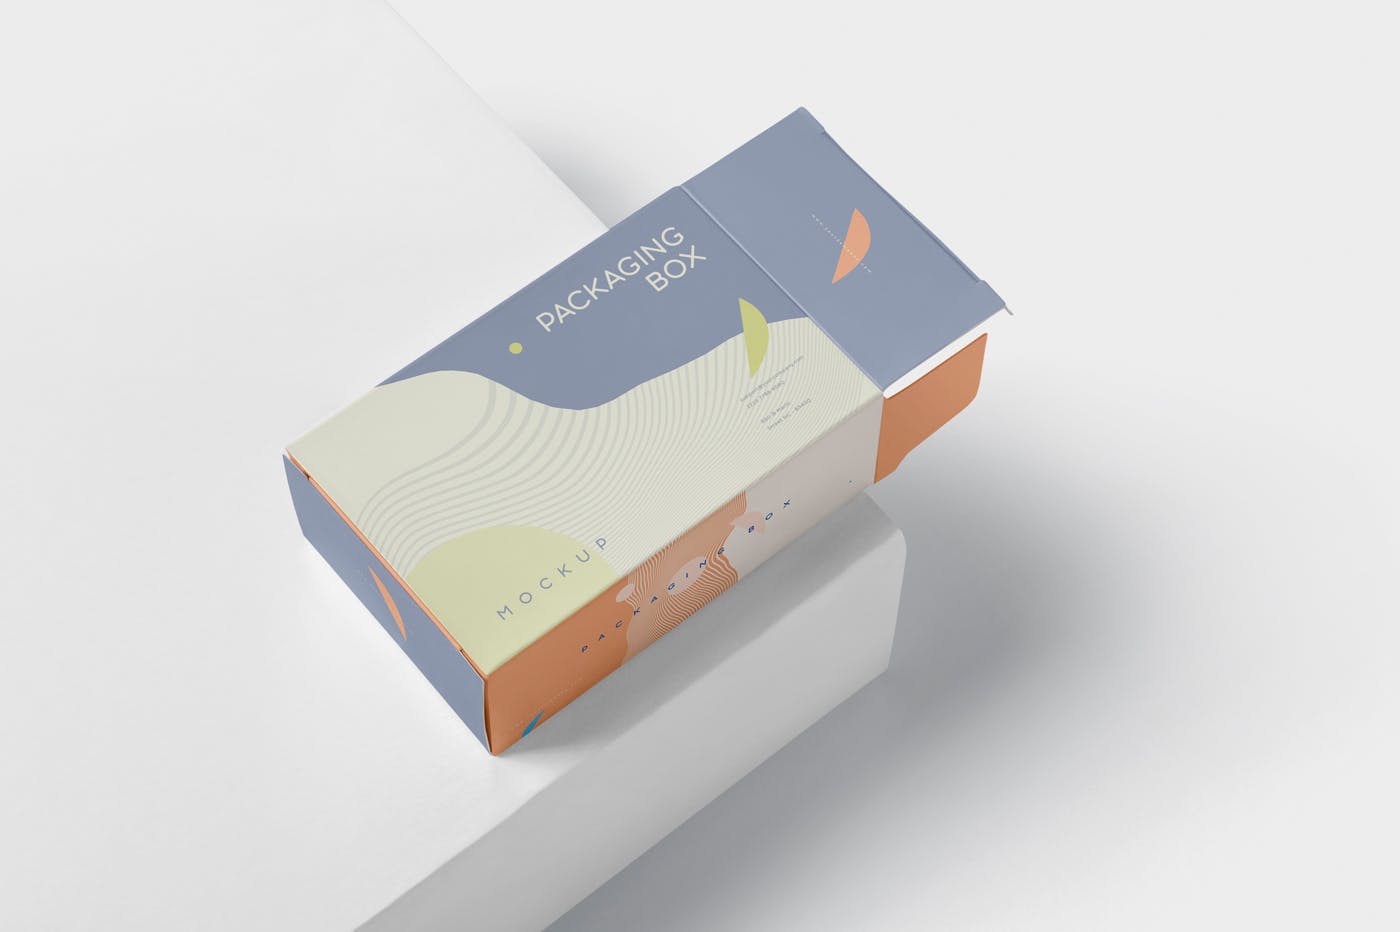 扁平矩形产品包装盒效果图蚂蚁素材精选 Package Box Mockup – Slim Rectangle Shape插图(3)